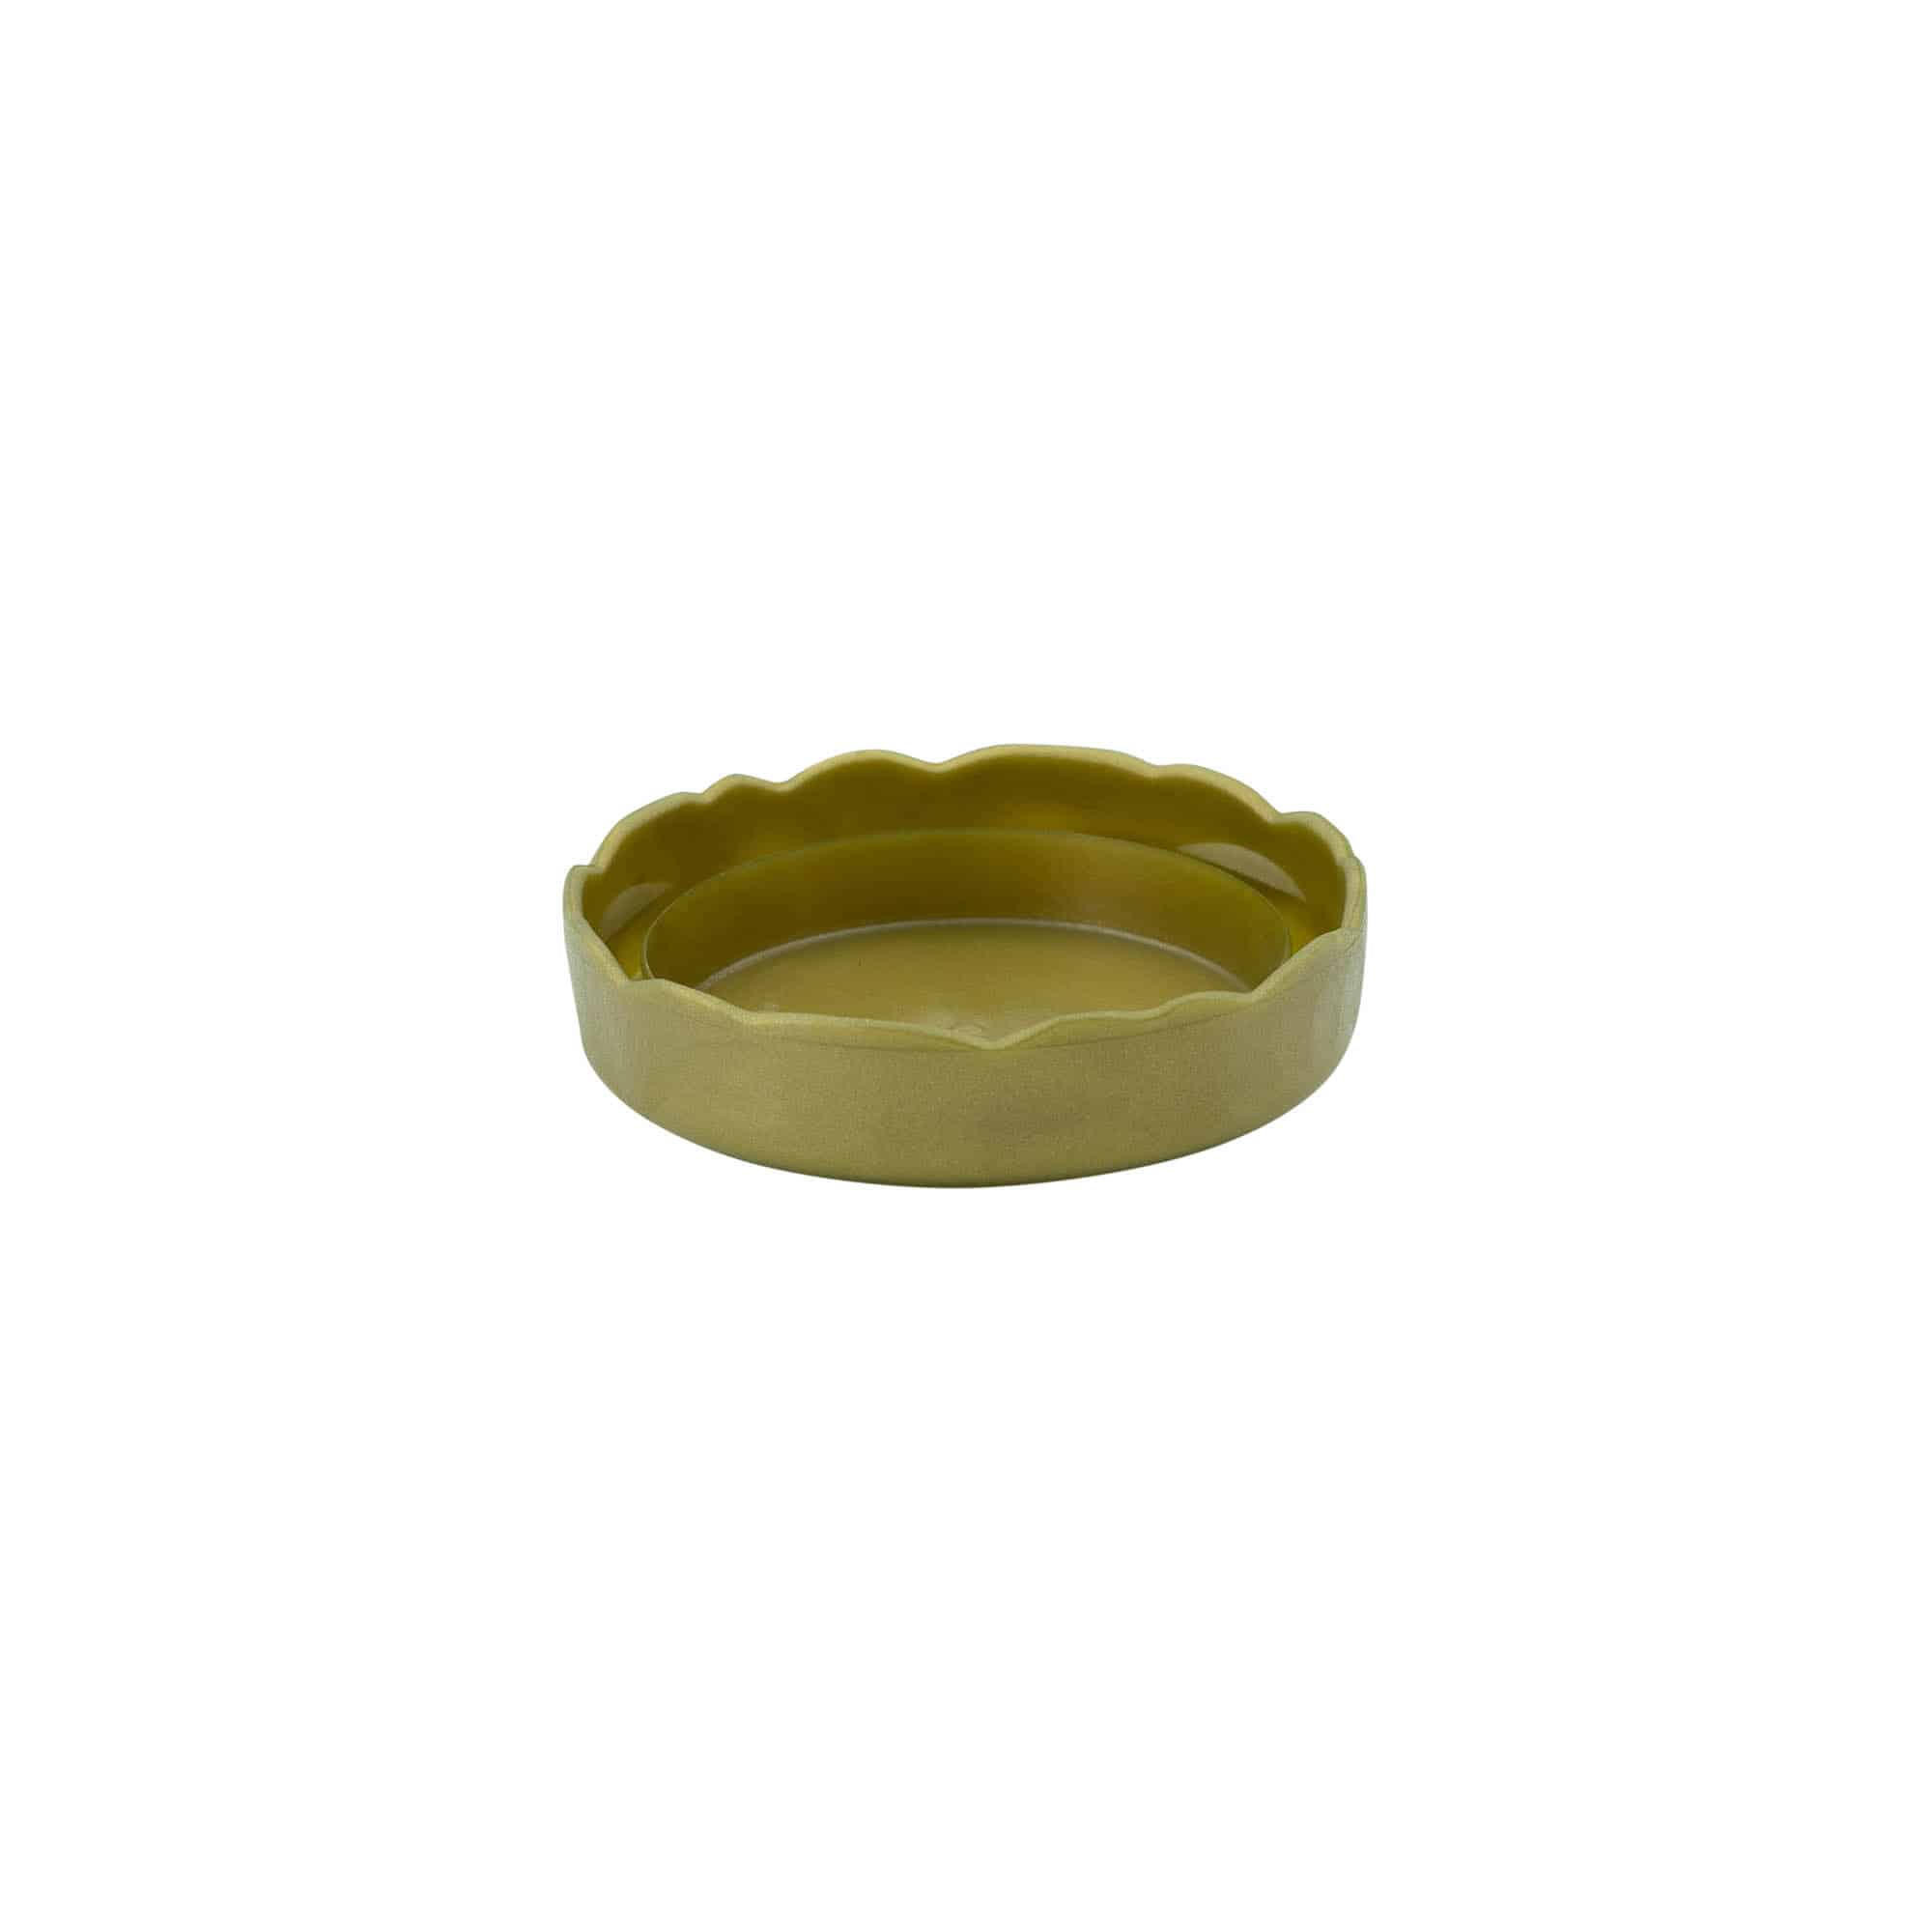 Couvercle-cloche pour pot en céramique à col étroit, plastique PEHD, doré